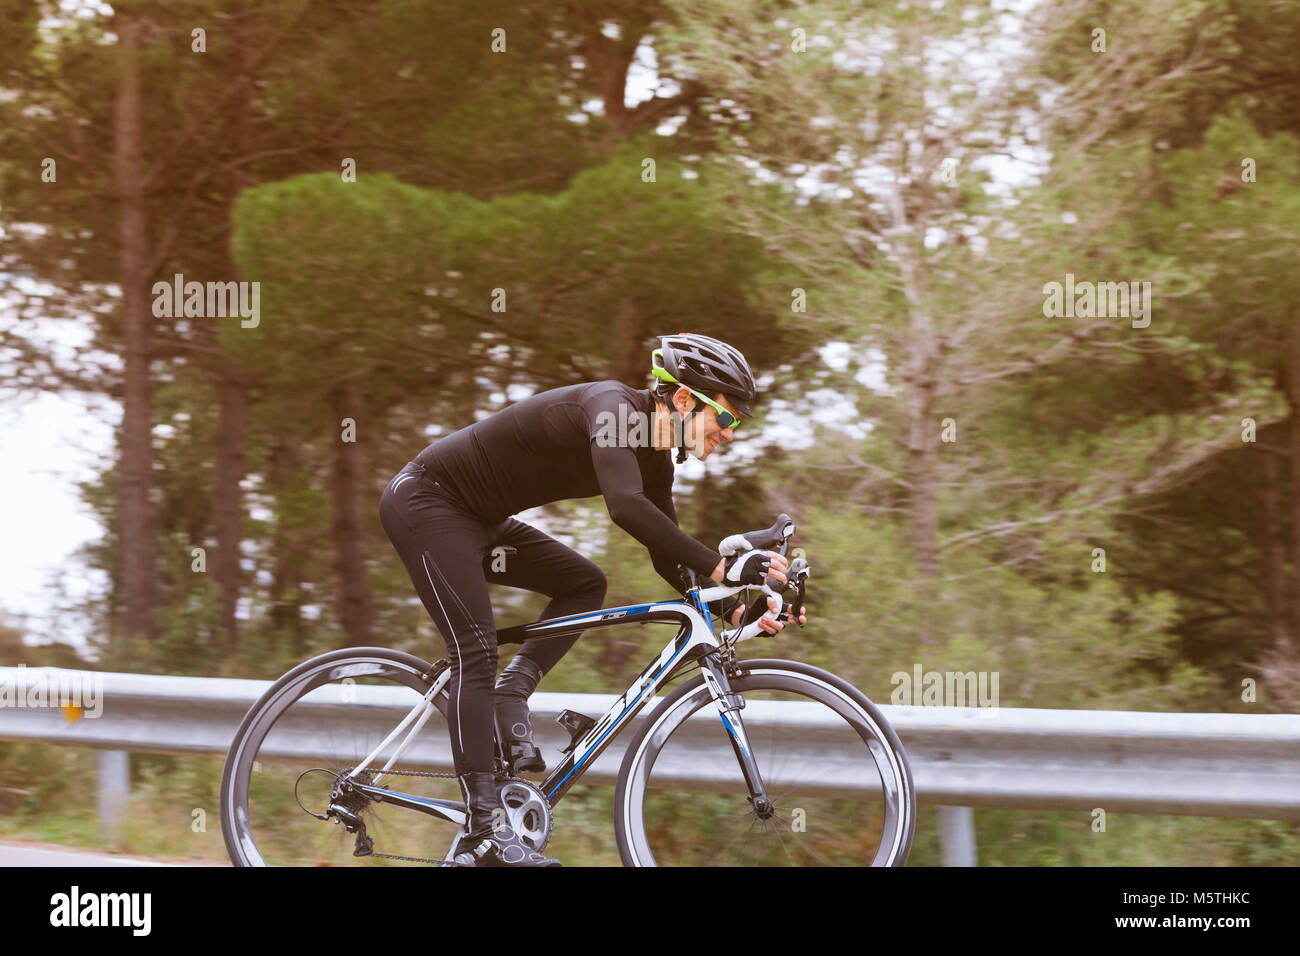 Vue d'un cycliste en descendant mâle d'une route de campagne. Vélo de triathlon sur une bicyclette Banque D'Images